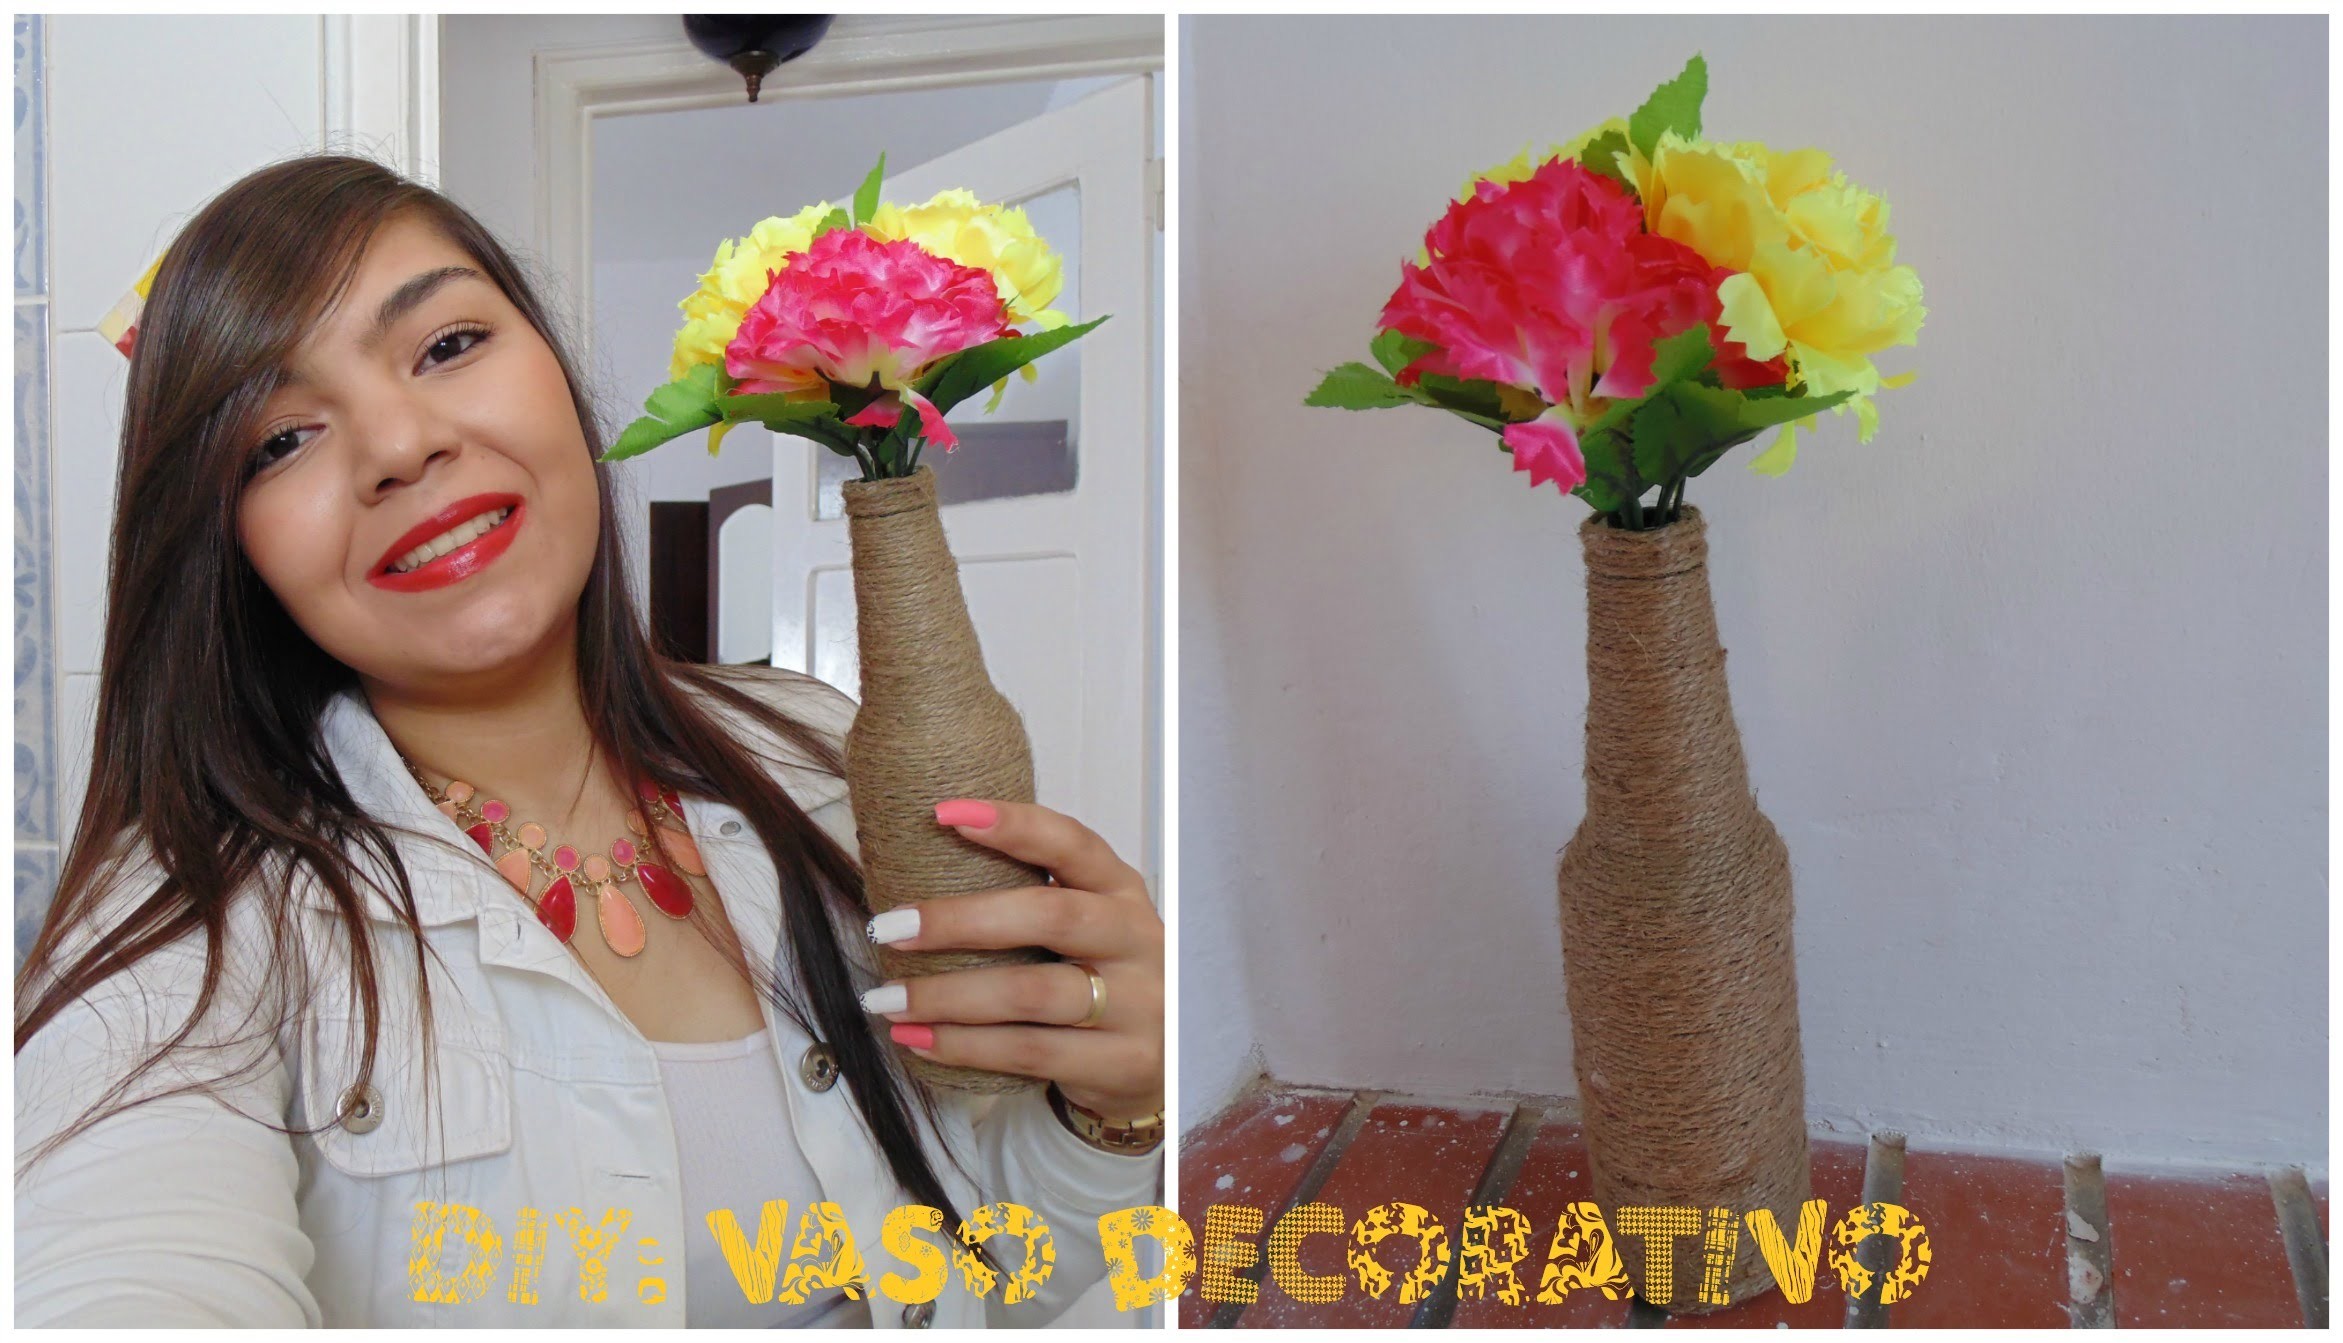 DIY:Faça você mesma vaso decorativo com flores e garrafas